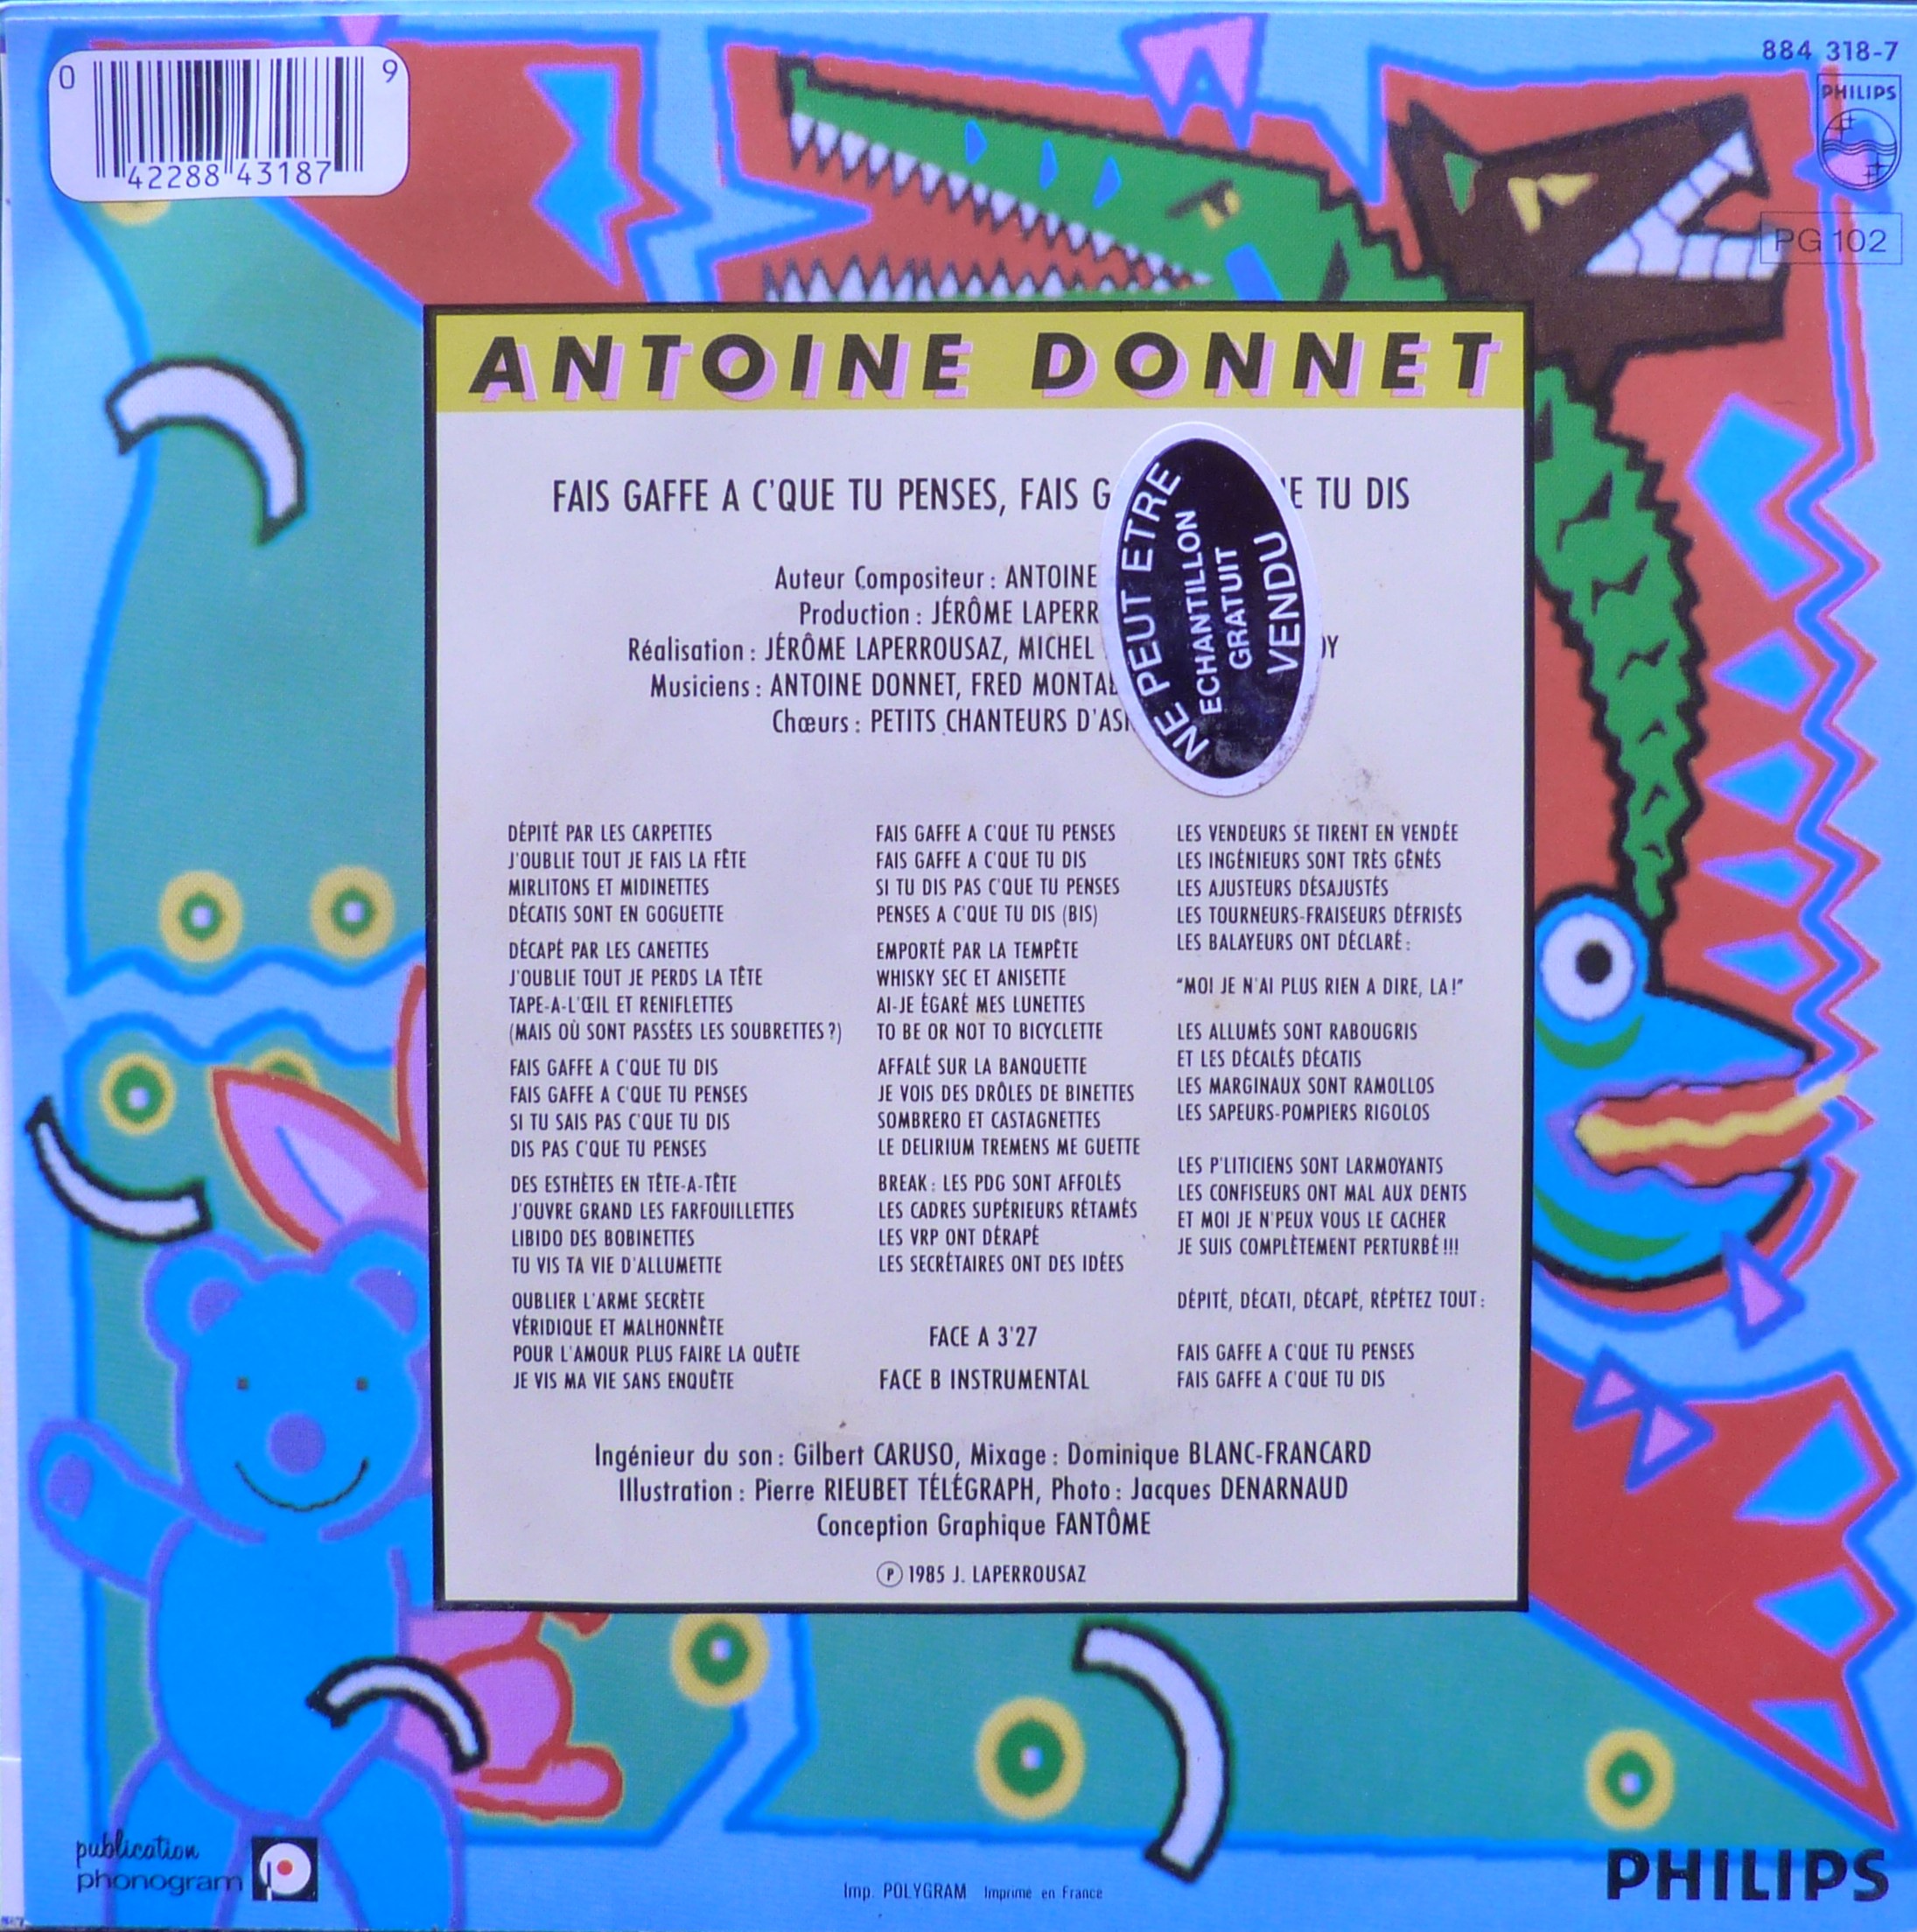 Antoine Donnet